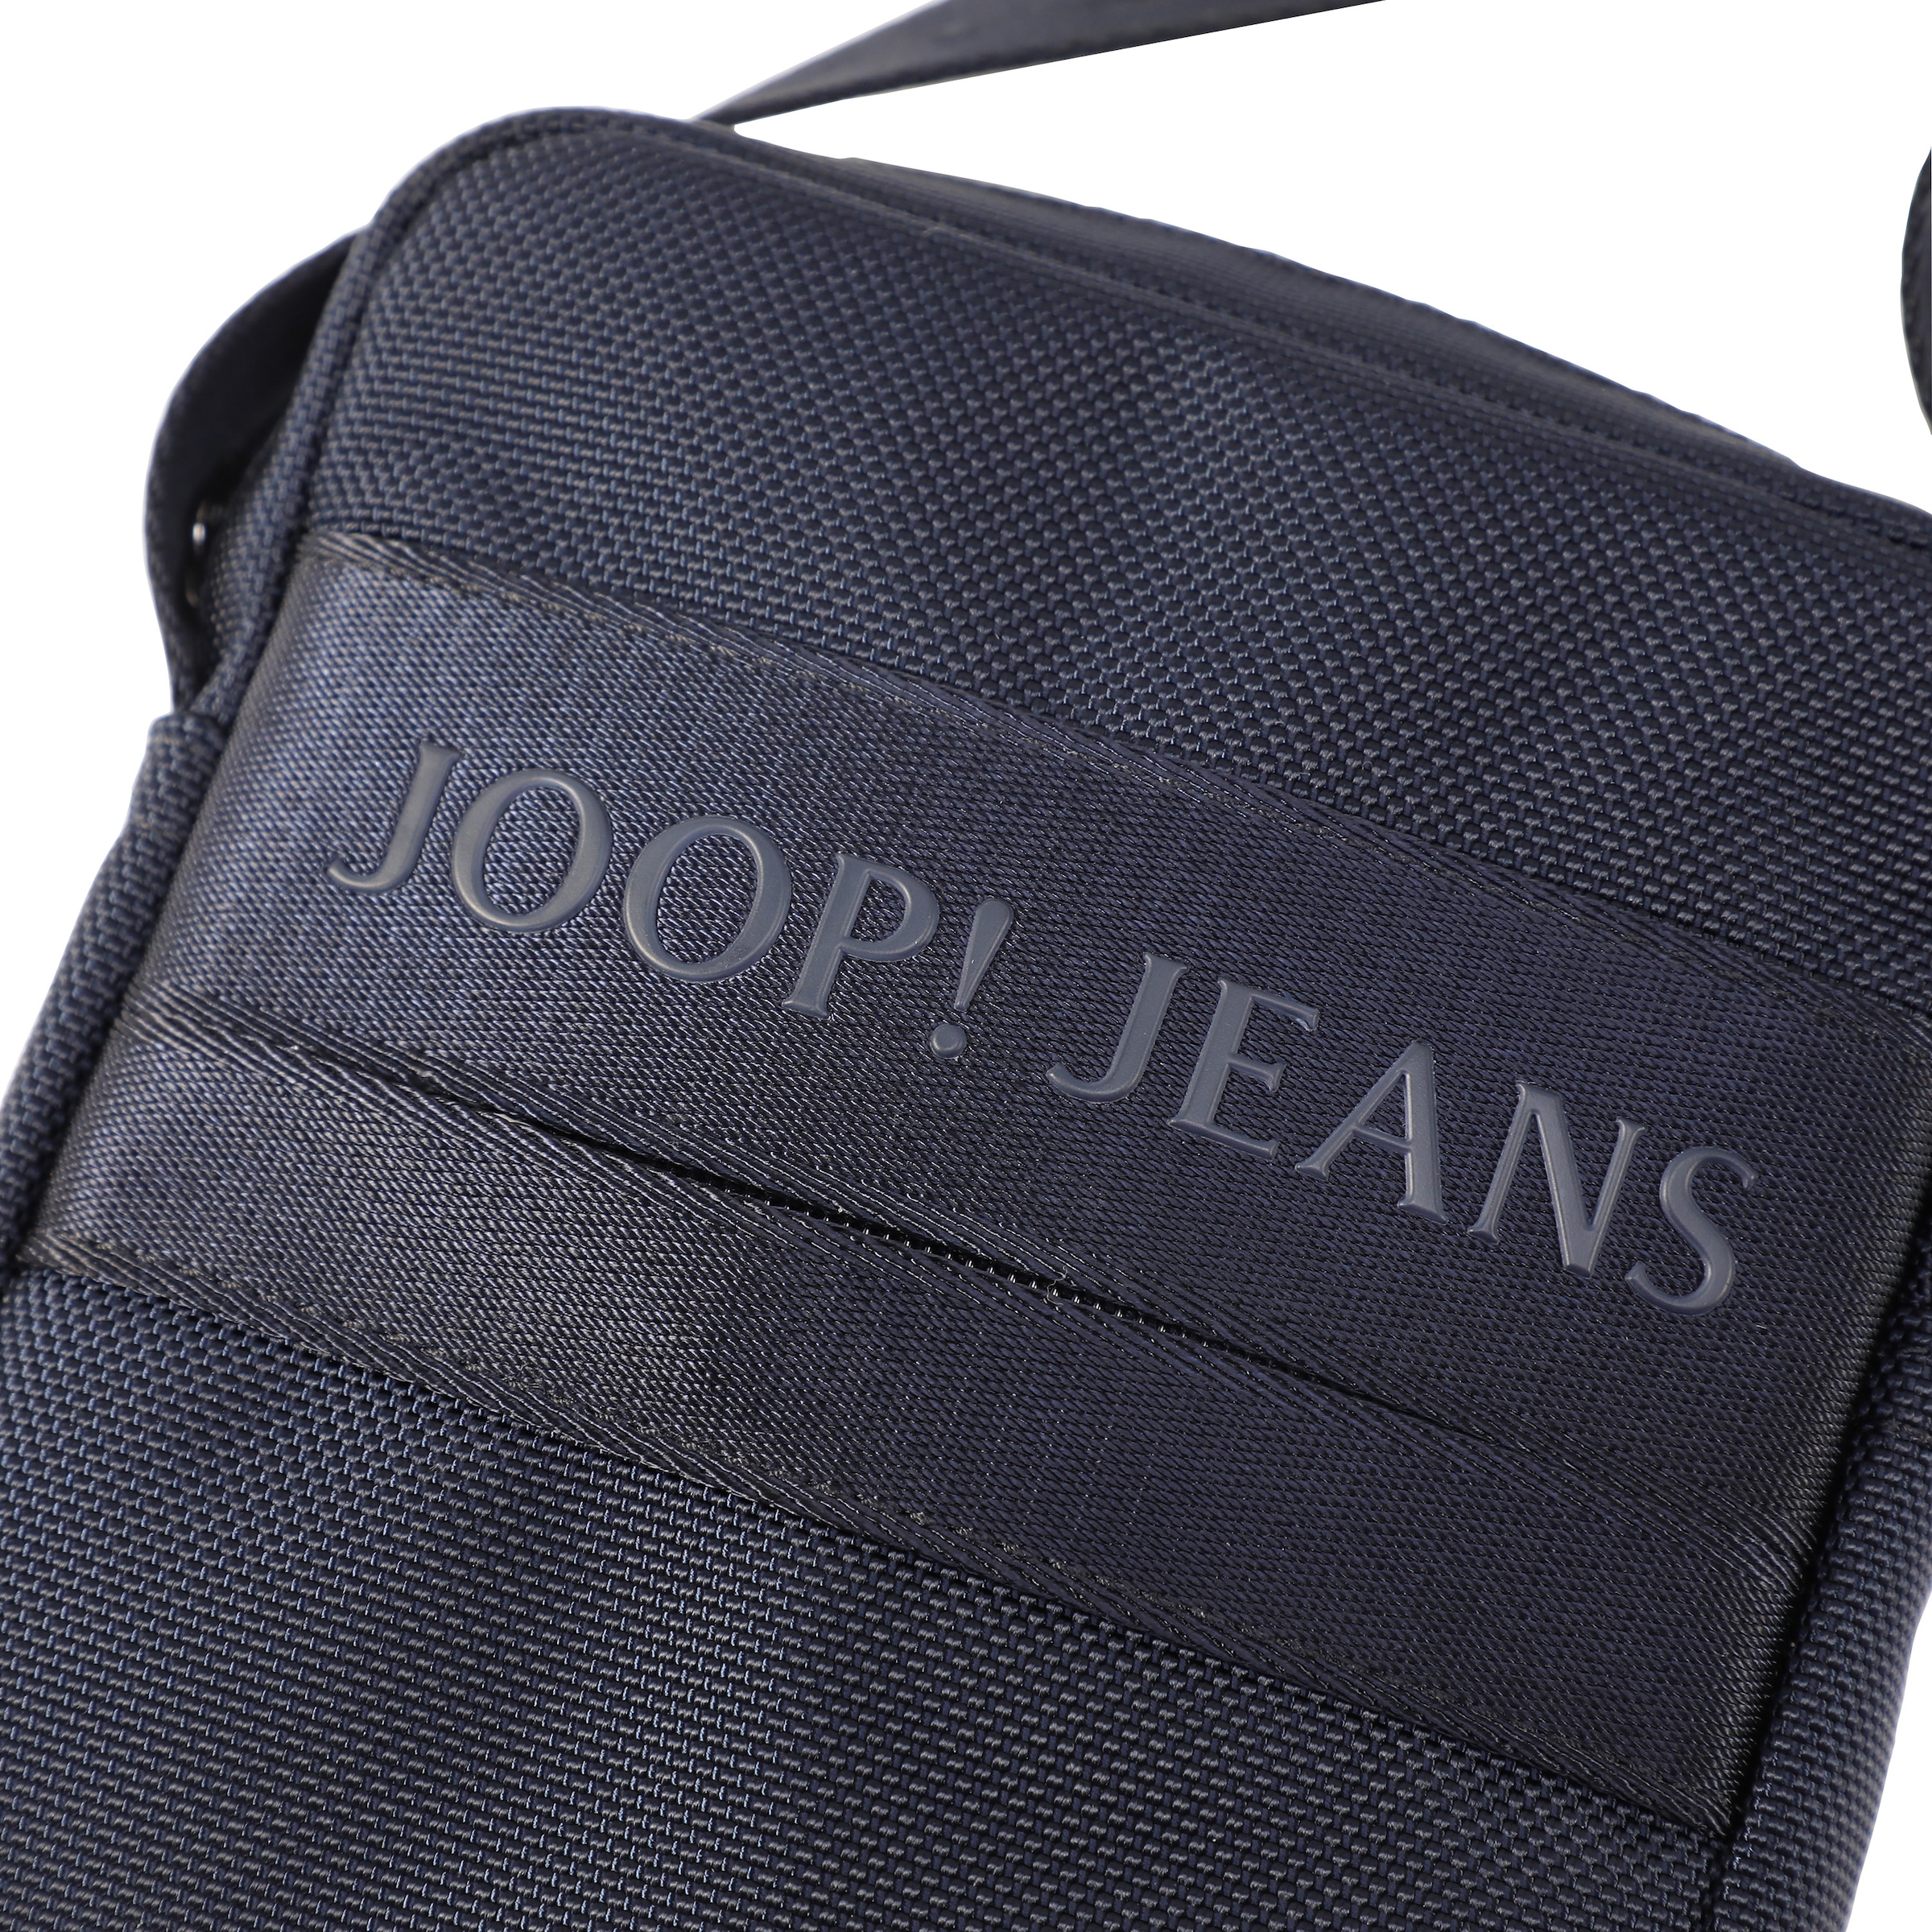 Joop Jeans Umhängetasche »modica rafael shoulderbag xsvz«, im praktischen  Design im Onlineshop | I\'m walking